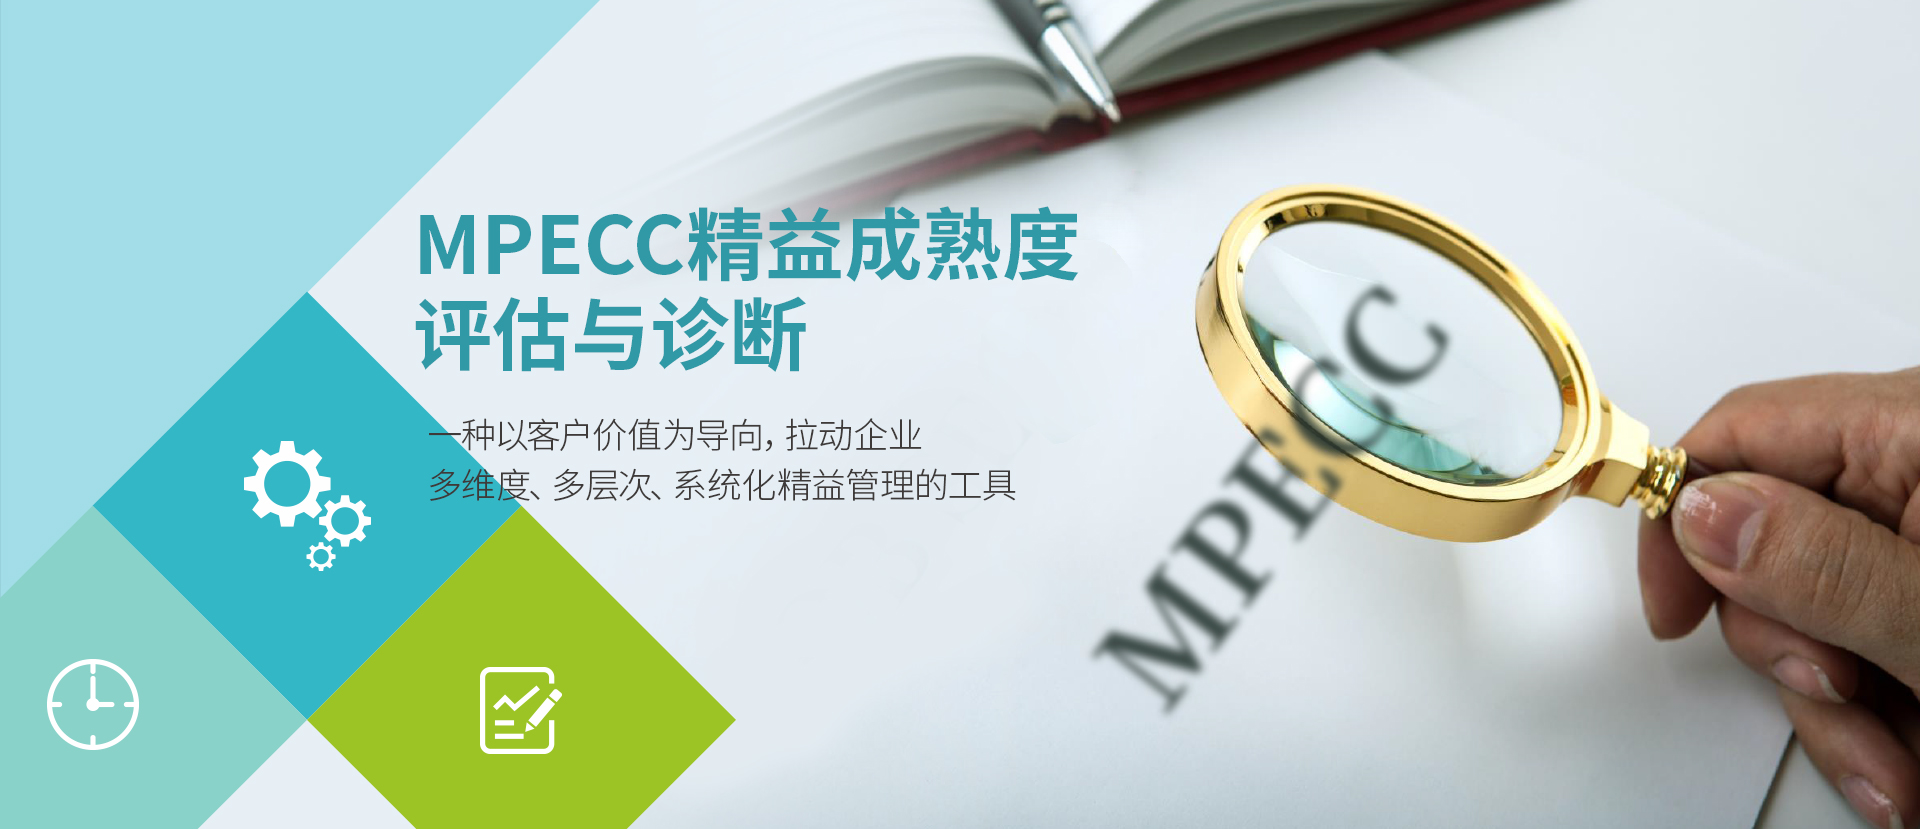 MPECC精益成熟度评估与诊断